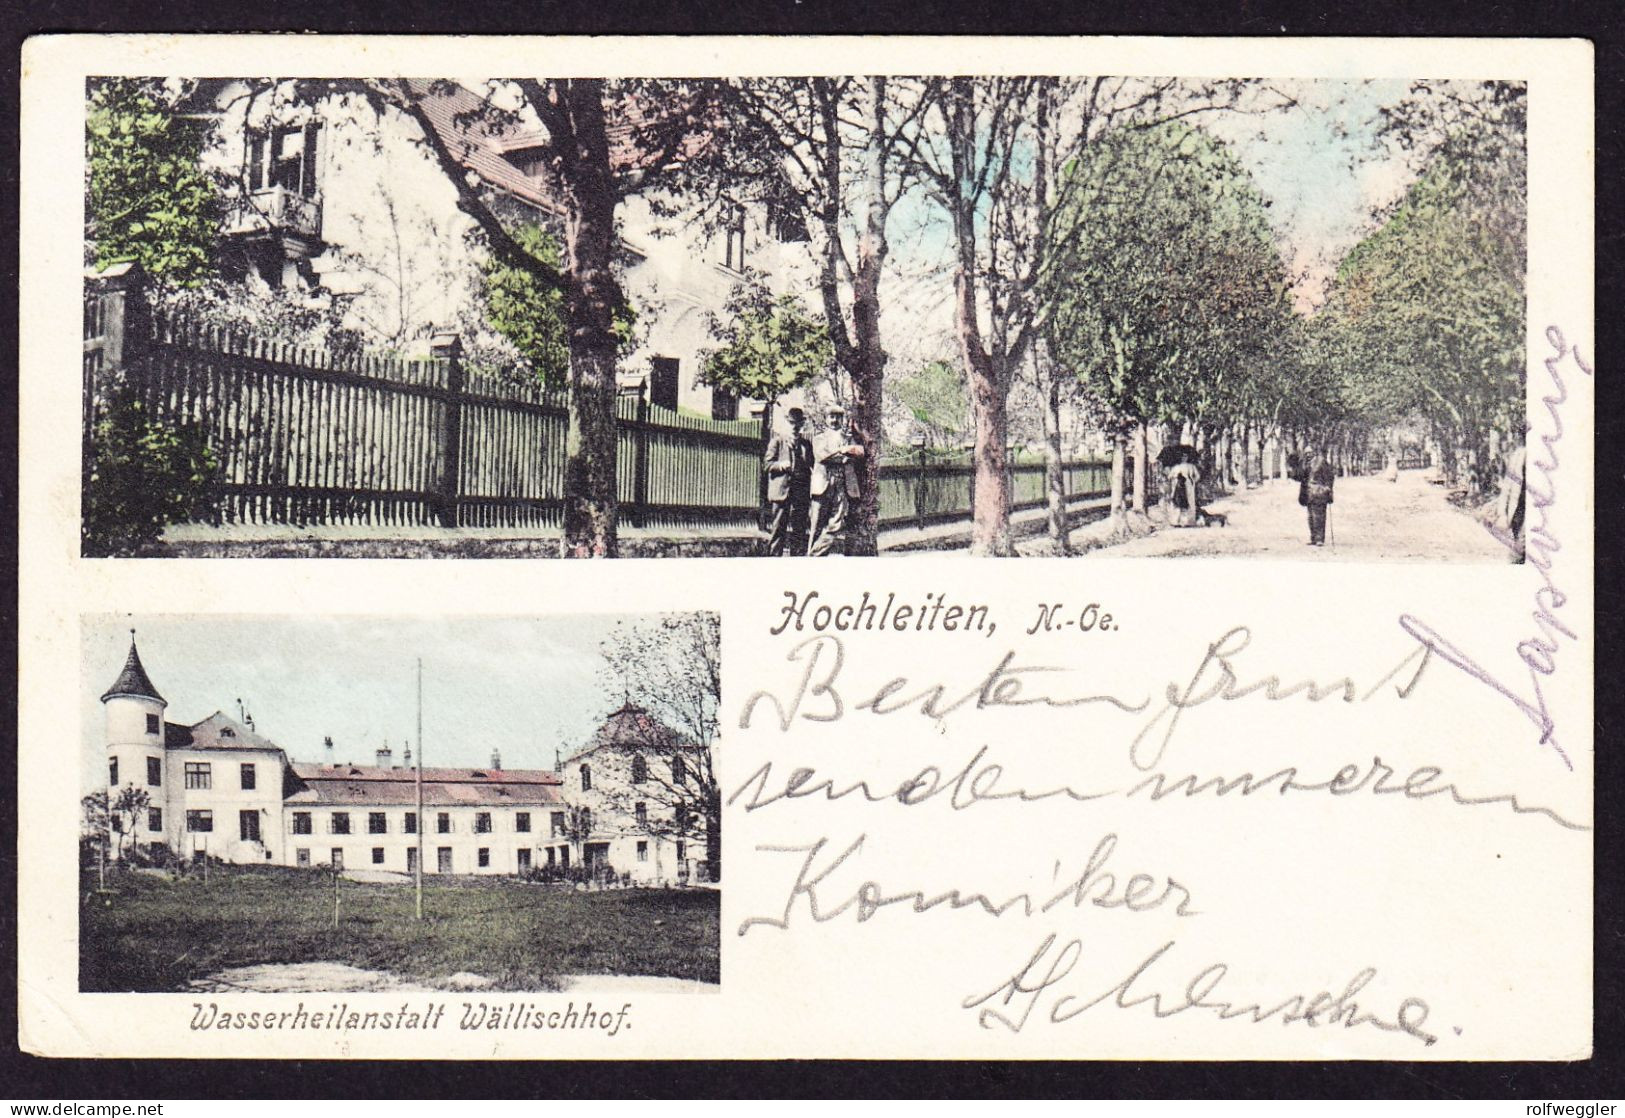 1911 Gelaufene AK Aus Hochleiten (Hochleithen) Mit Wasserheil Anstalt. Minimer Eckbug Links Unten. - Mistelbach